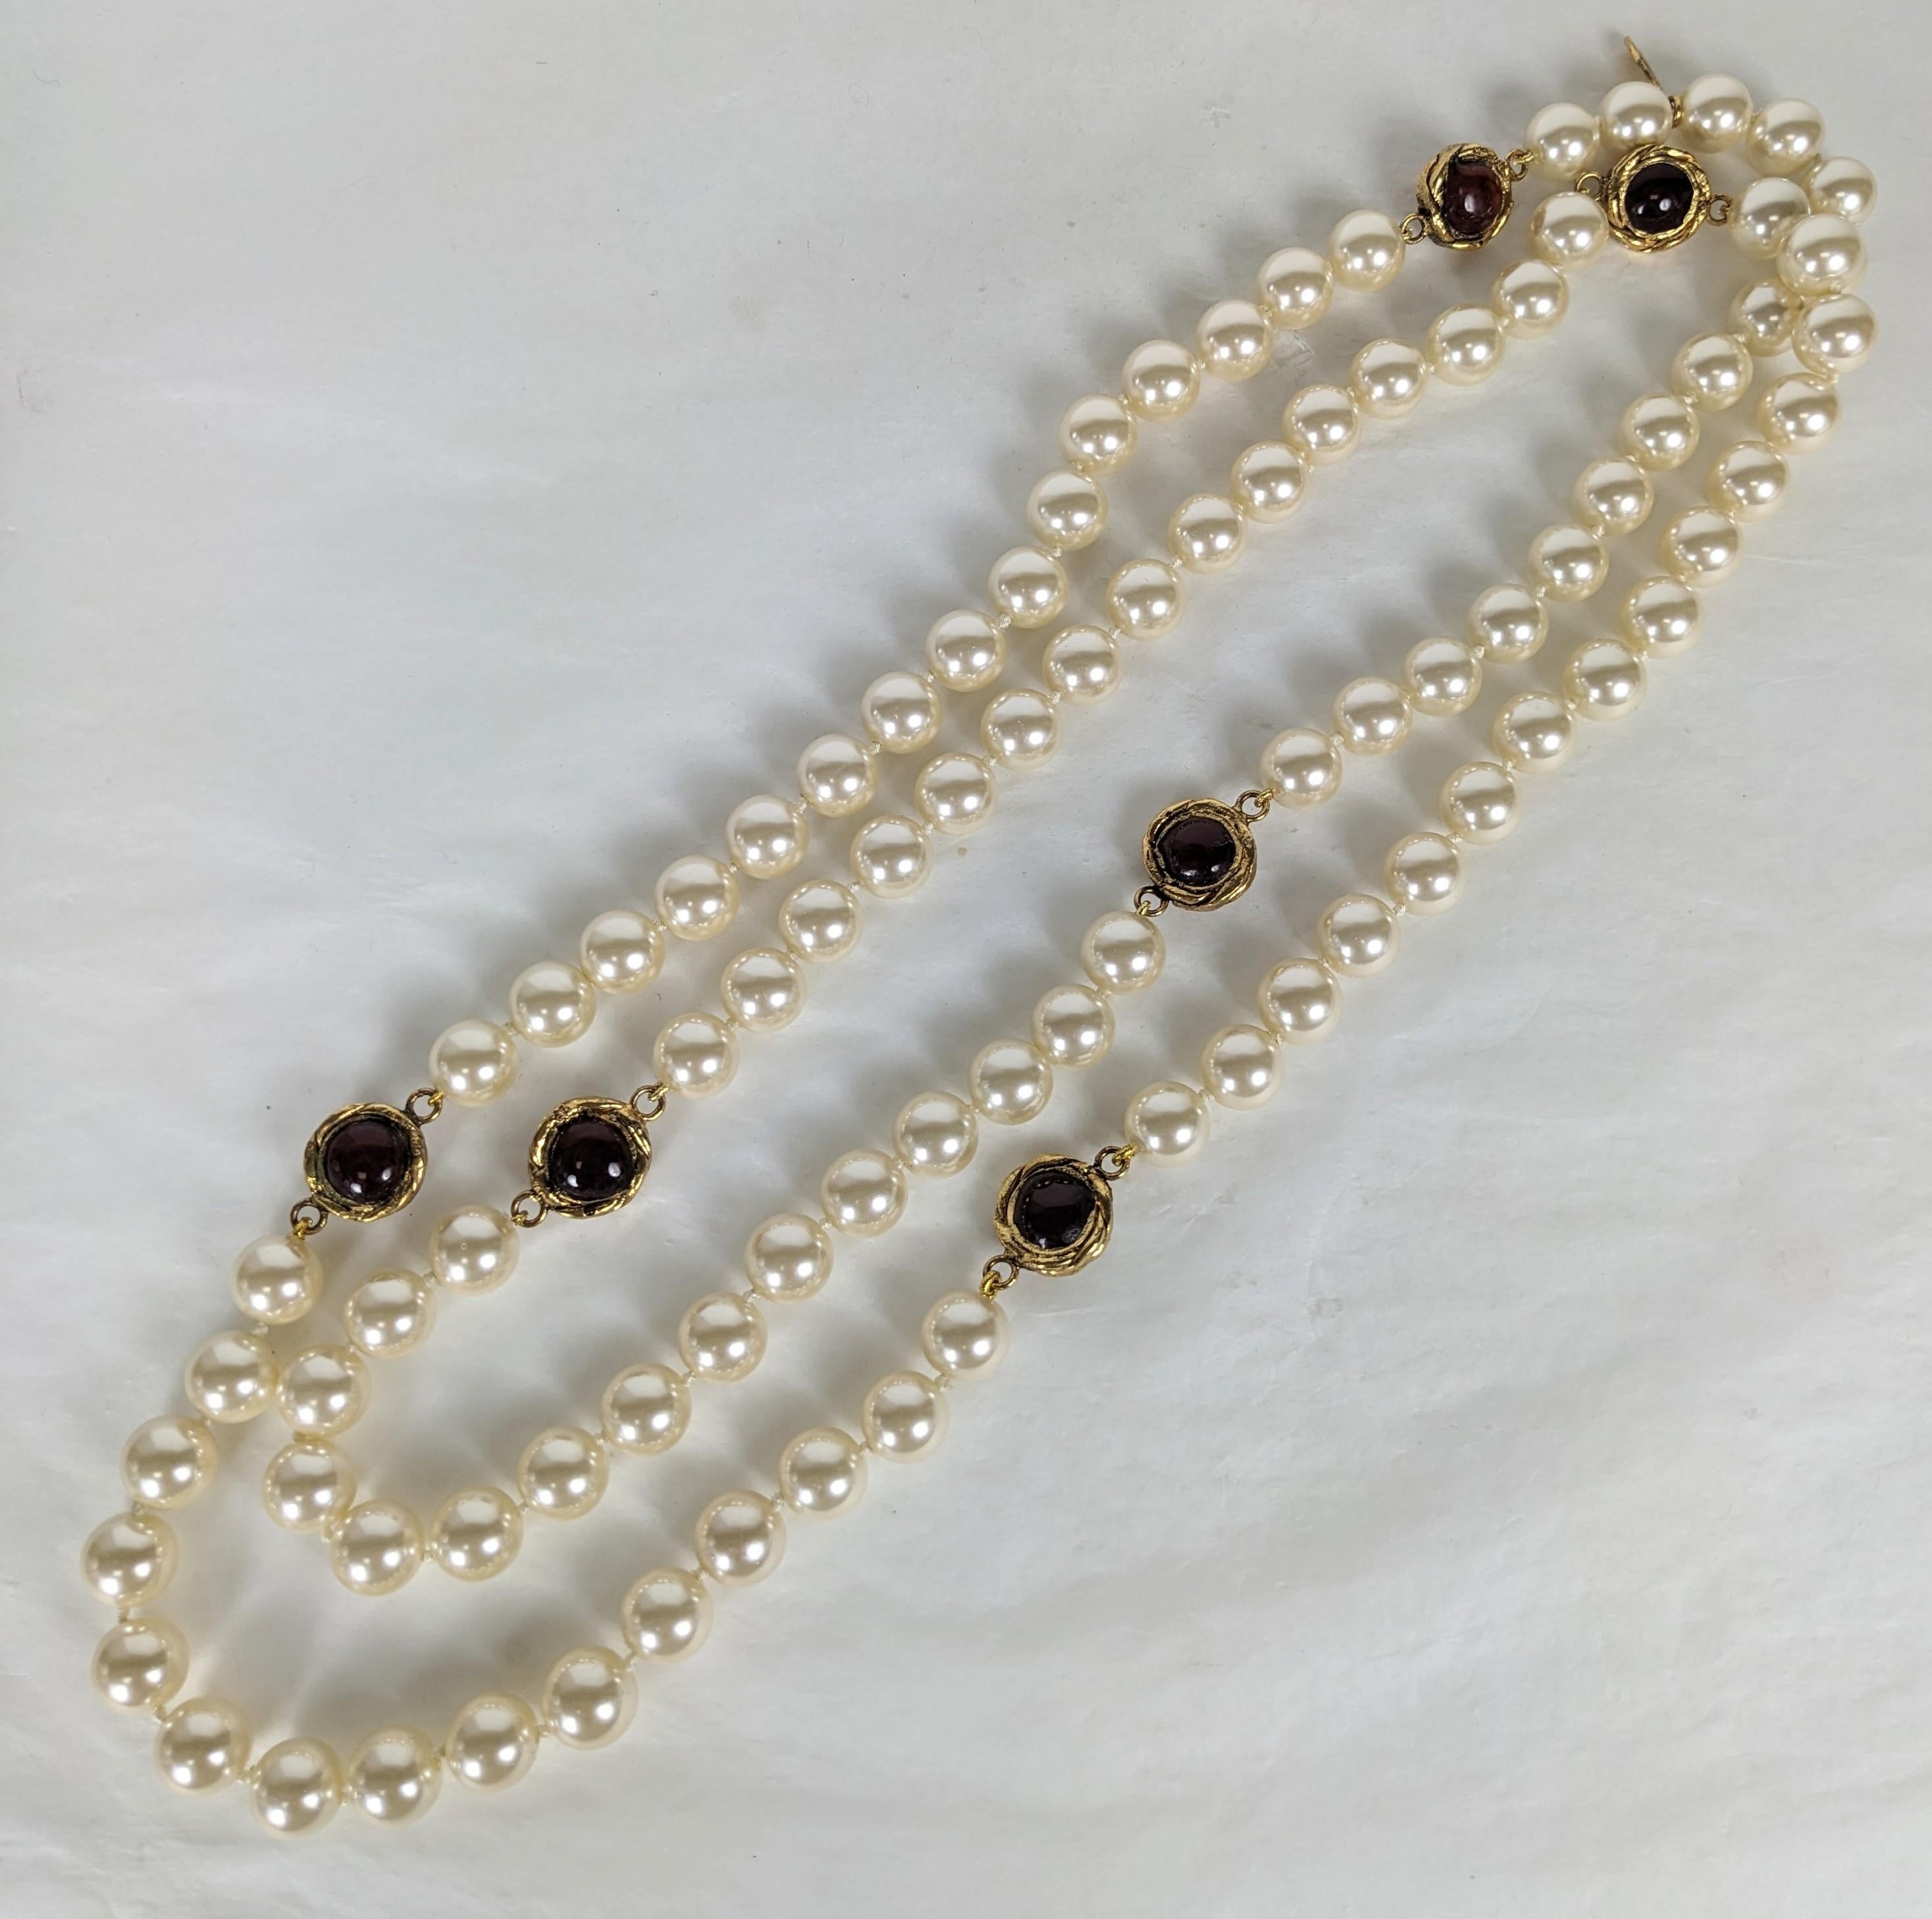 Byzantinische Kette von Chanel mit endlosem Perlenimitat. Bestehend aus durchgehenden, handgeknüpften Maison Gripoix Glasimitatperlen mit handgefertigten Maison Gripoix gegossenem, rundem, rubinrotem Emaille in vergoldeten, bronzenen, umkehrbaren